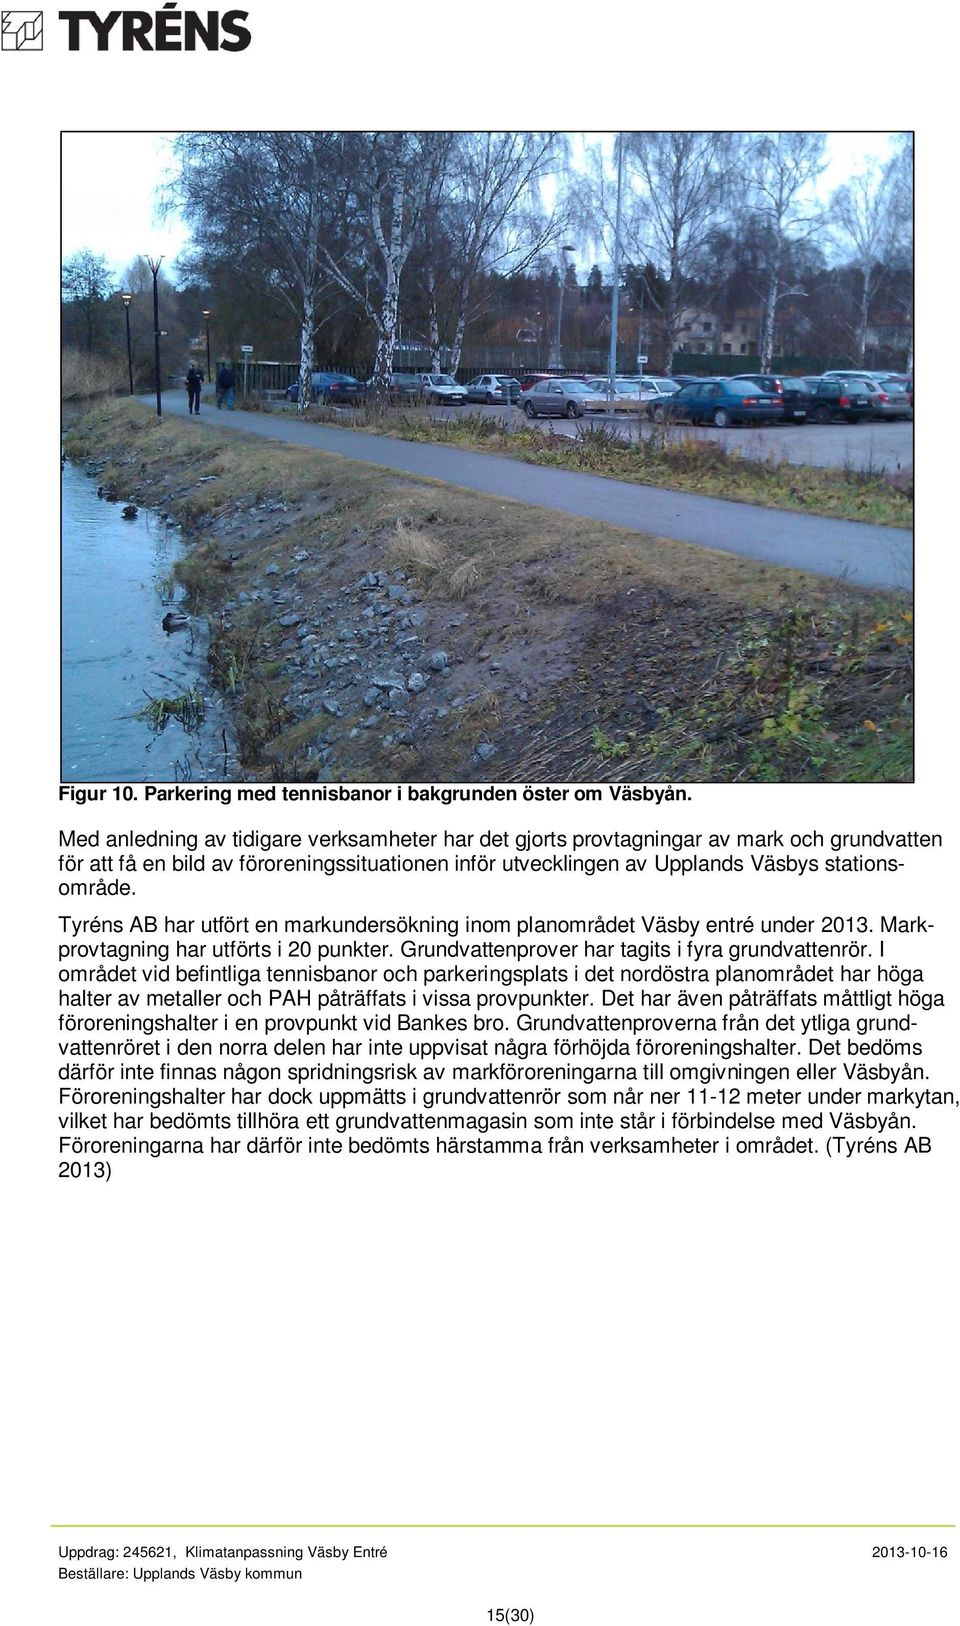 Tyréns AB har utfört en markundersökning inom planområdet Väsby entré under 2013. Markprovtagning har utförts i 20 punkter. Grundvattenprover har tagits i fyra grundvattenrör.